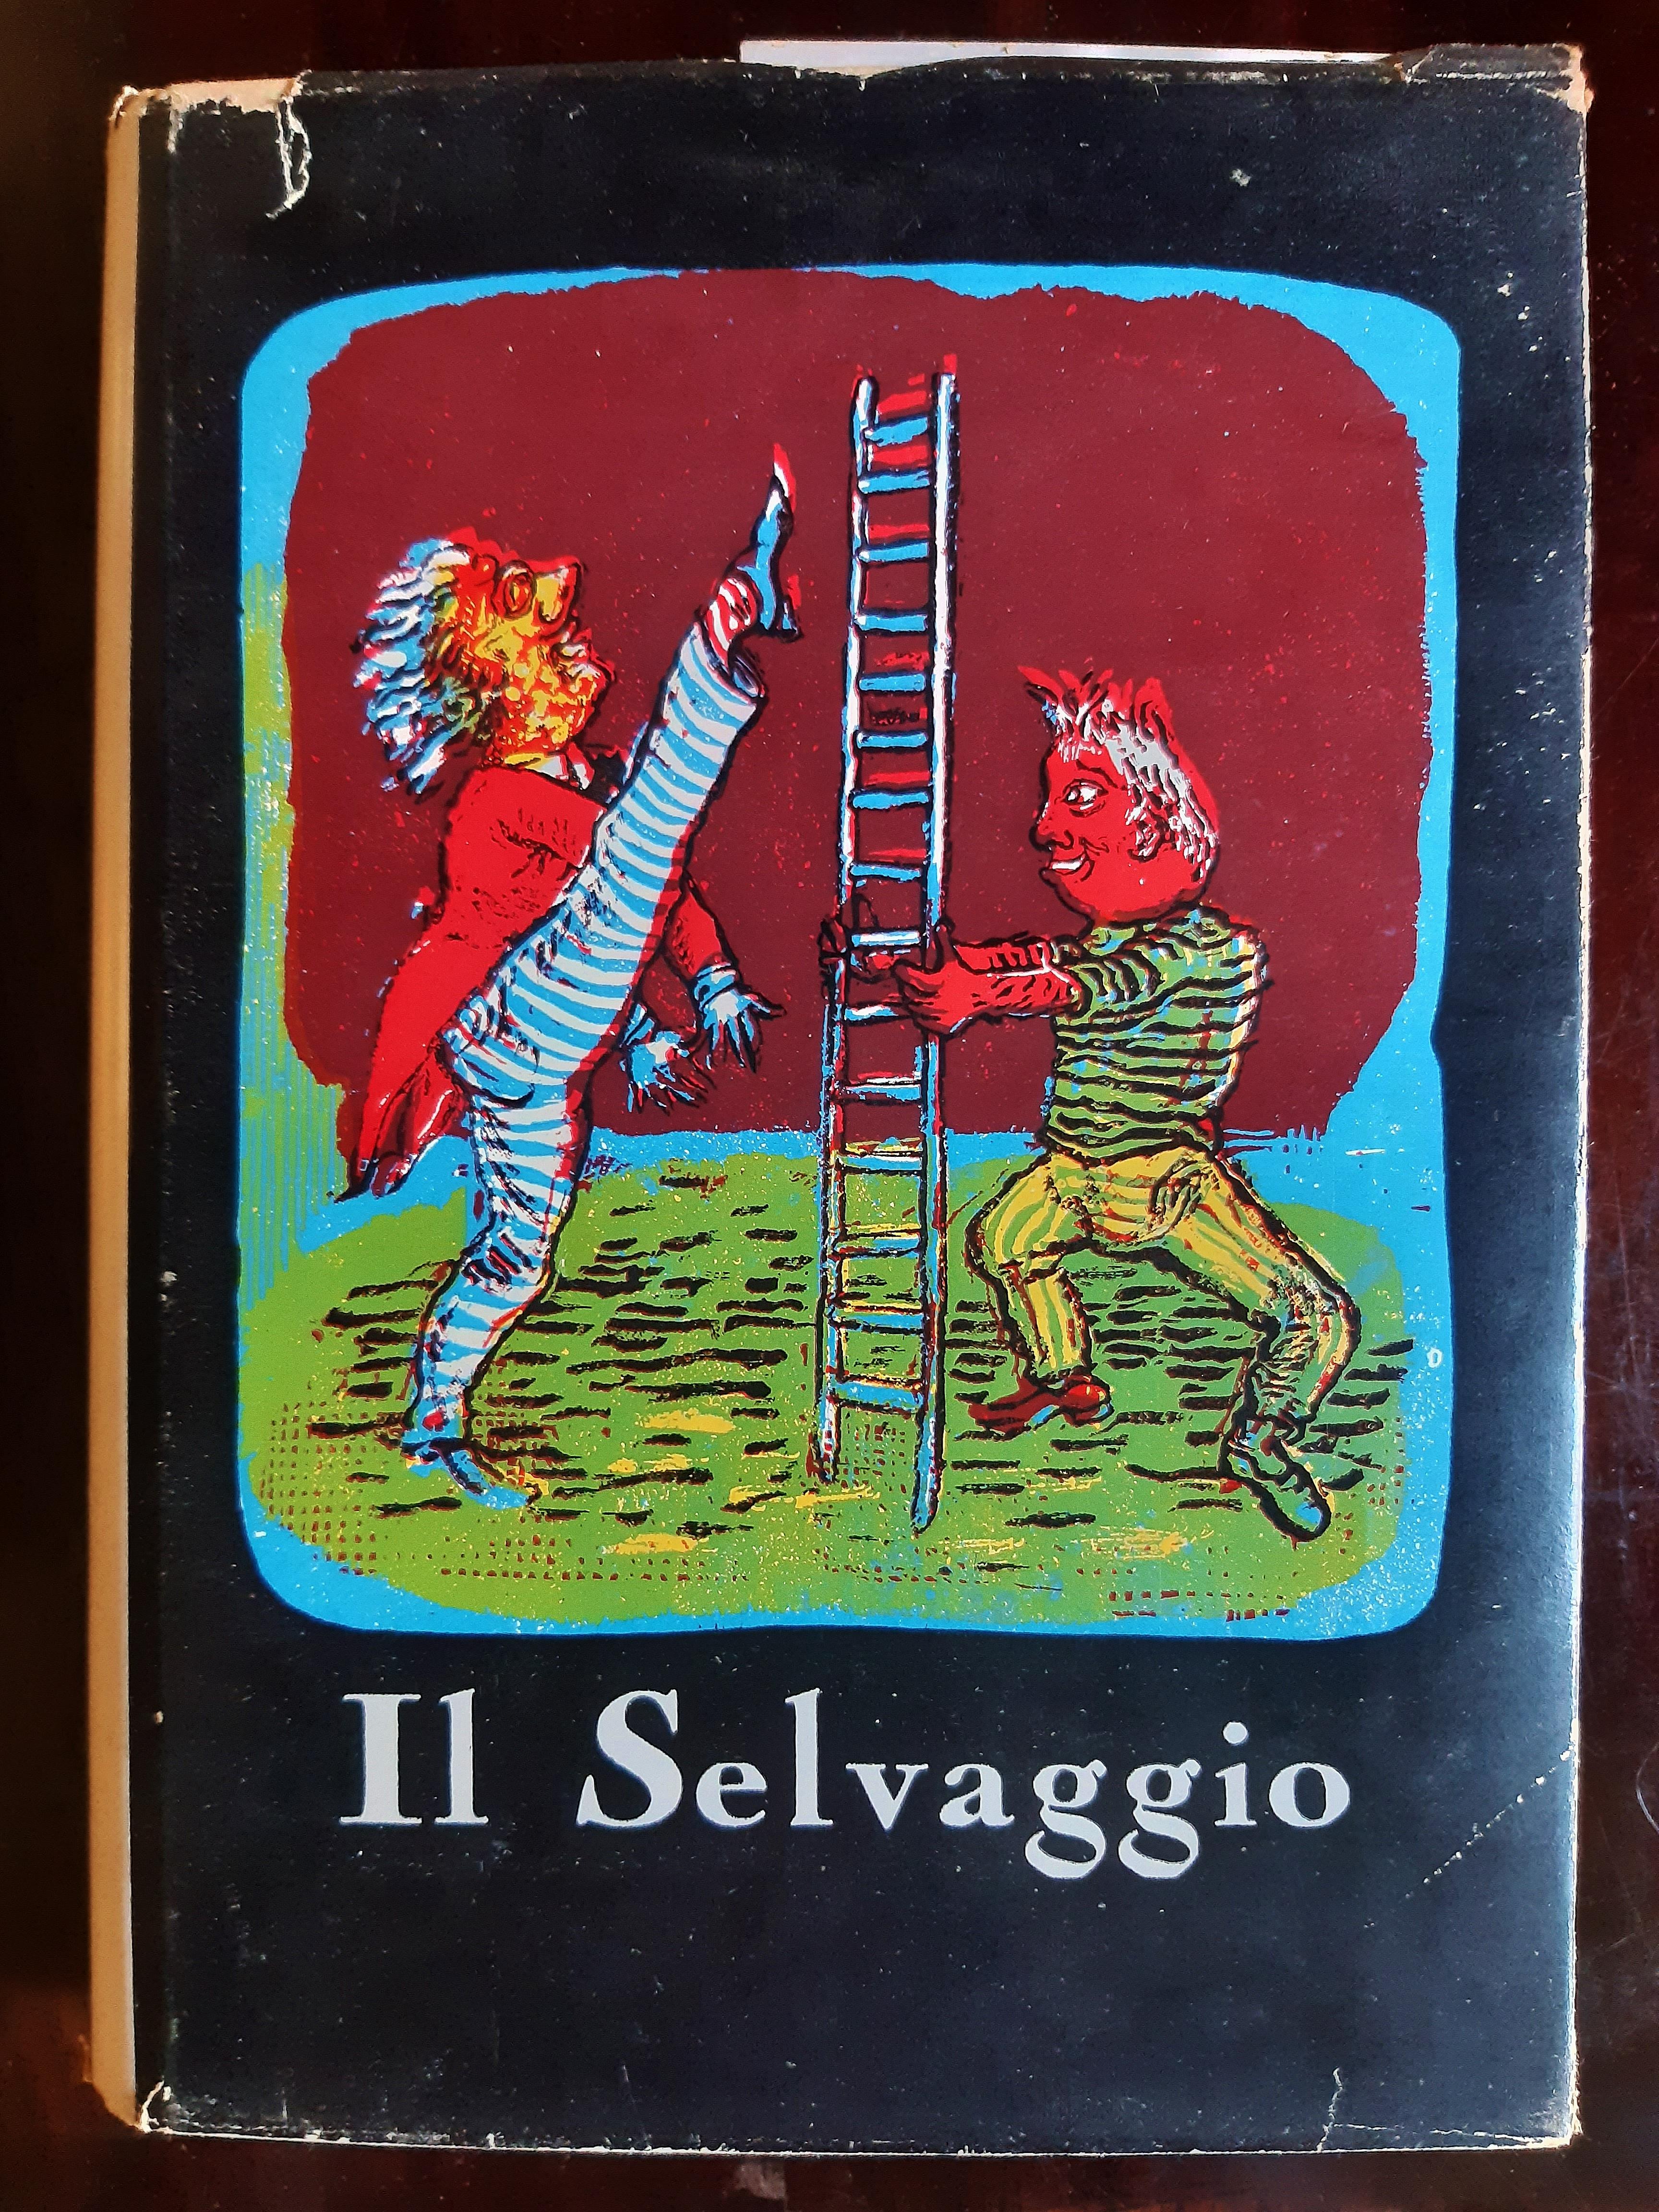 Il Selvaggio - Rare Book Illustrated by Mino Maccari - 1955